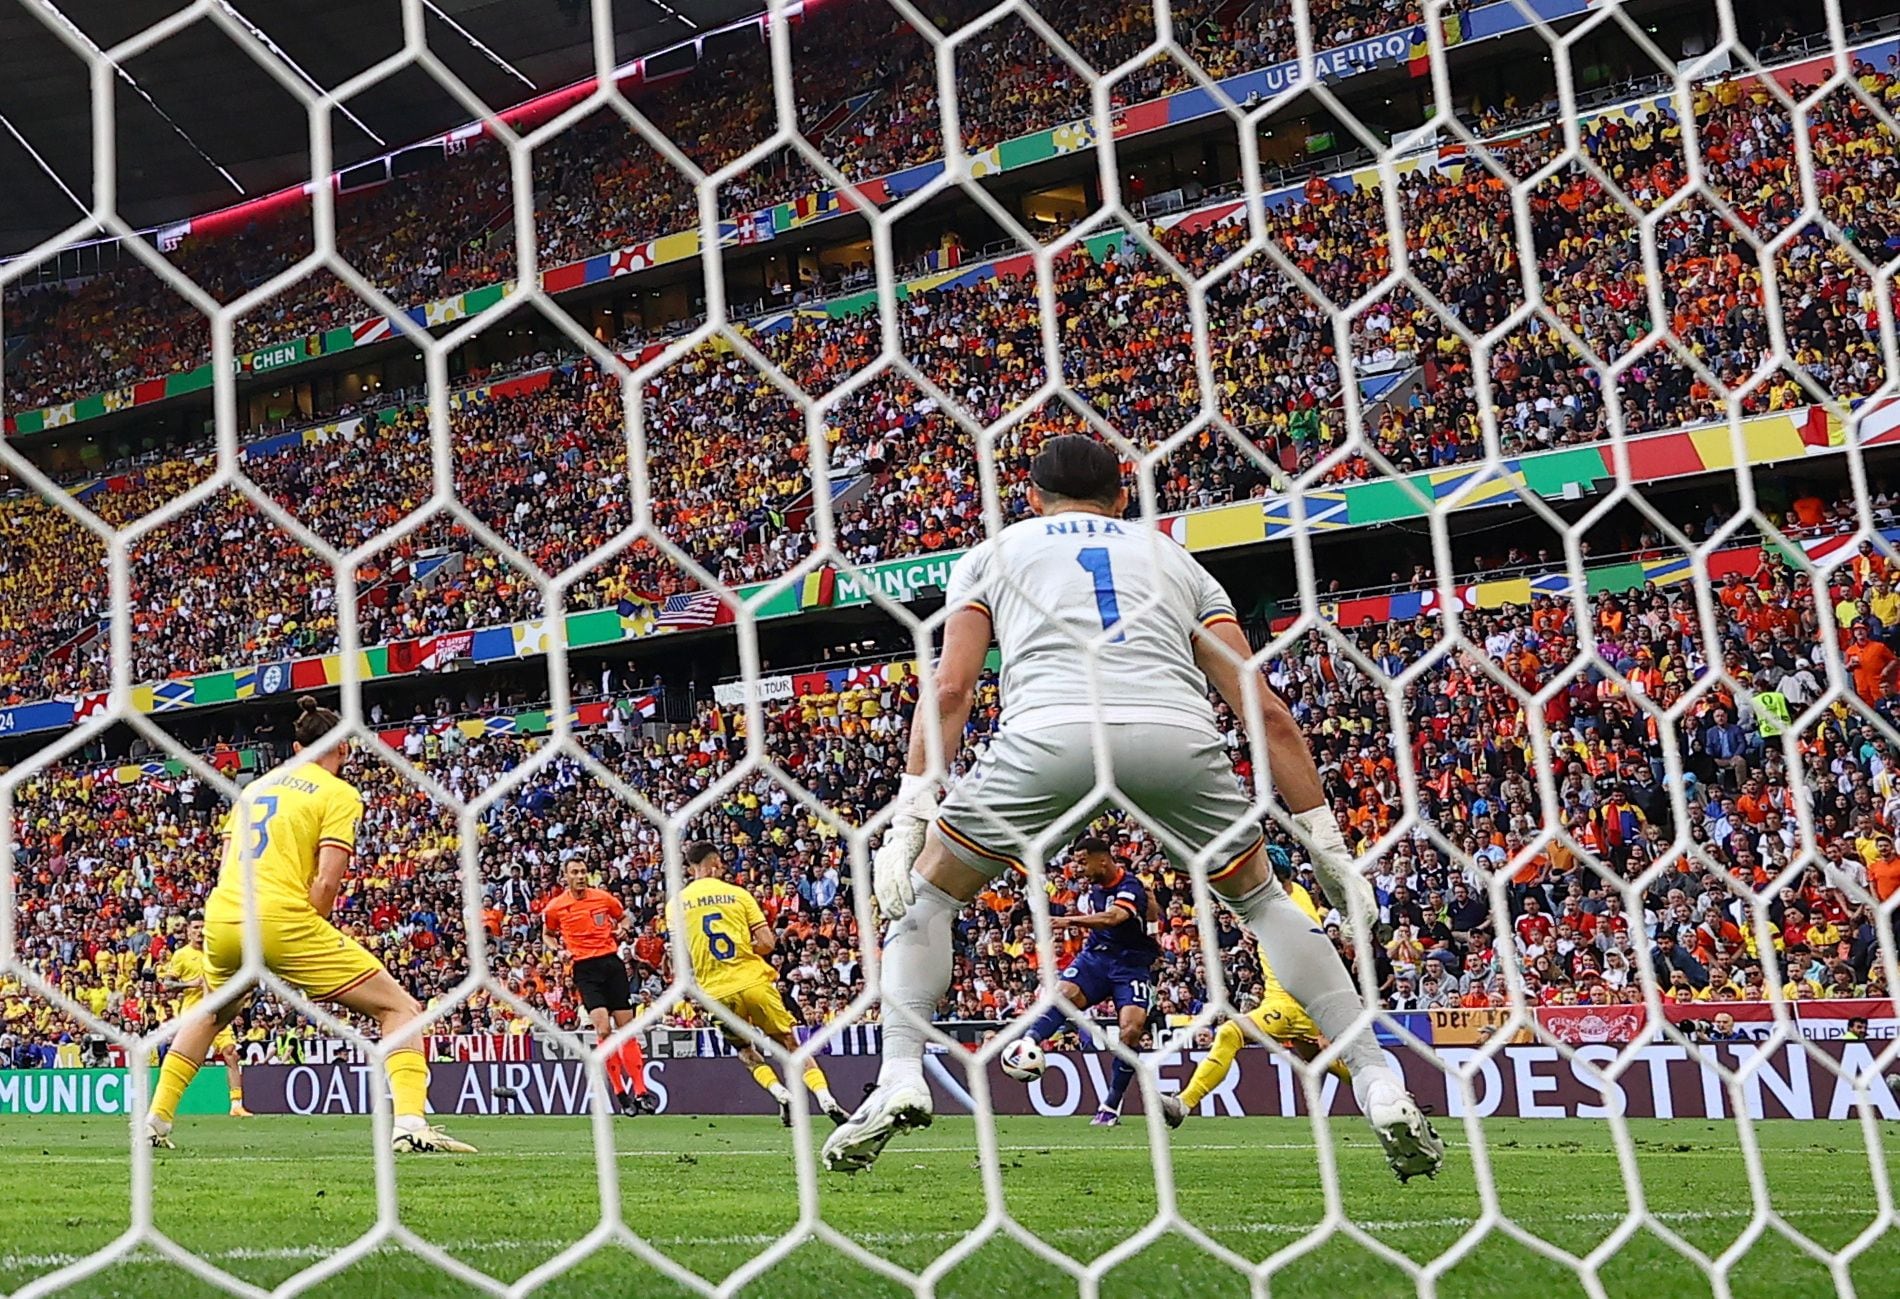 Rumania – Países Bajos, en directo | La selección neerlandesa vence a la rumana con un gol de Gakpo